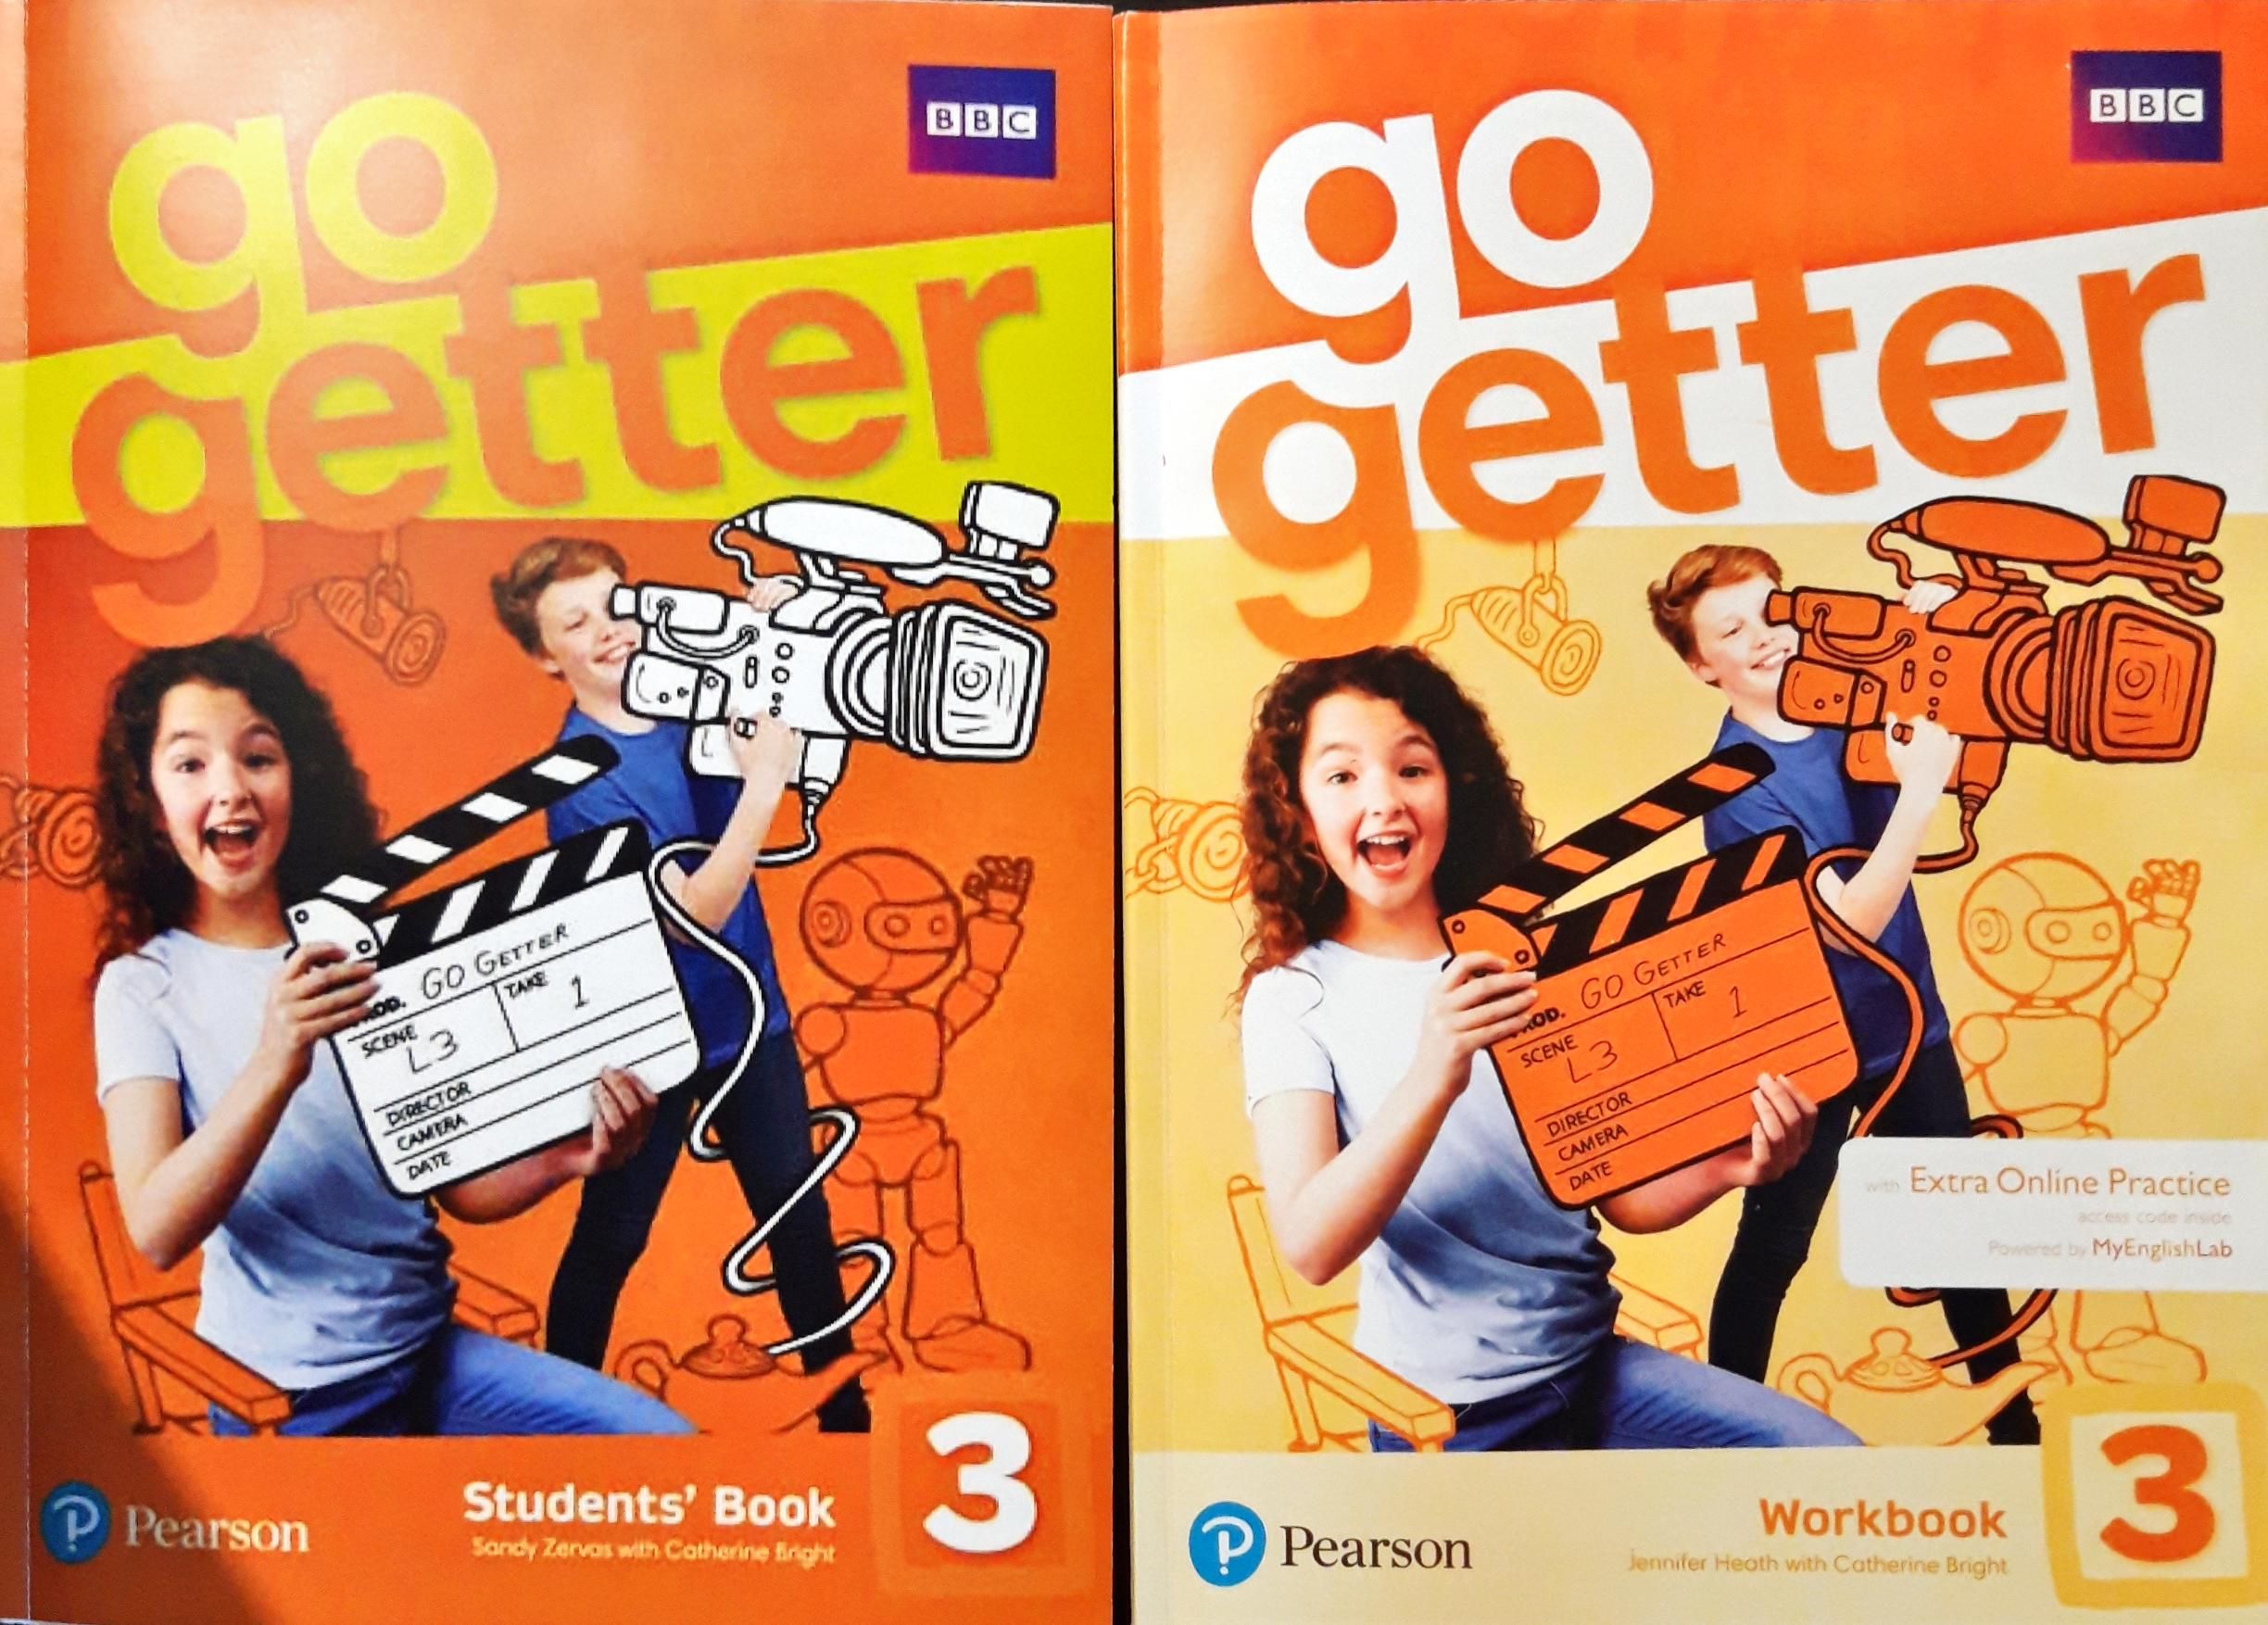 Go getter shopping. Рабочая тетрадь go Getter 1 Pearson. Учебник go Getter 3. Учебник go Getter 1. Pearson go Getter 3 Workbook.